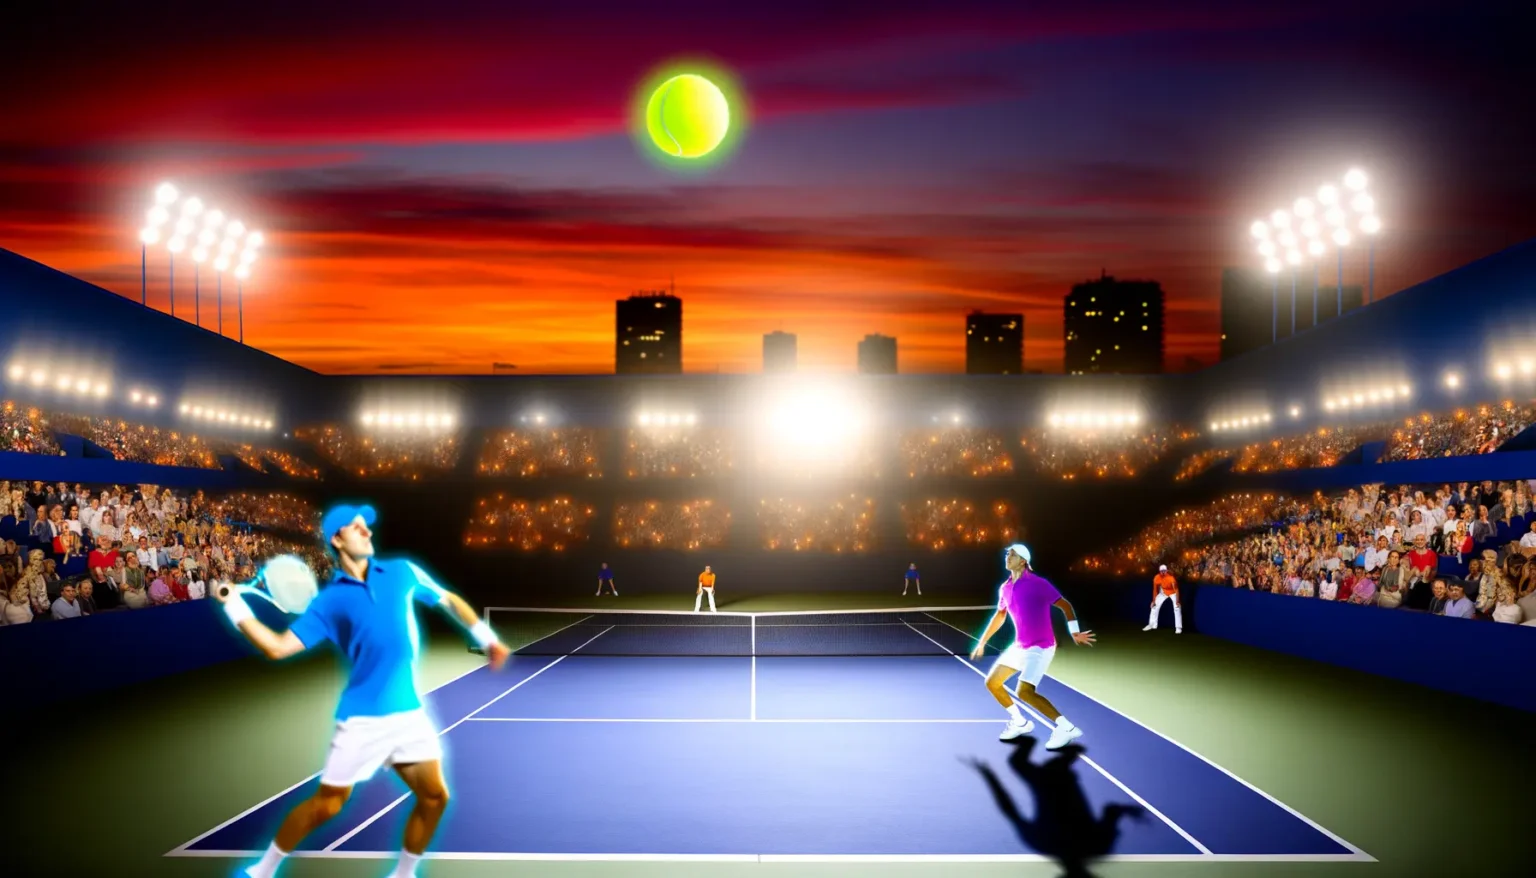 Vier Tennisspieler in einem Doppelmatch bei Nacht in einem großen Stadion unter künstlicher Beleuchtung mit einem leuchtenden Tennisball in der Bildmitte gegen einen dramatischen Sonnenuntergangshimmel im Hintergrund. Das Publikum rund um den Platz erscheint begeistert und aufmerksam während des Spiels.